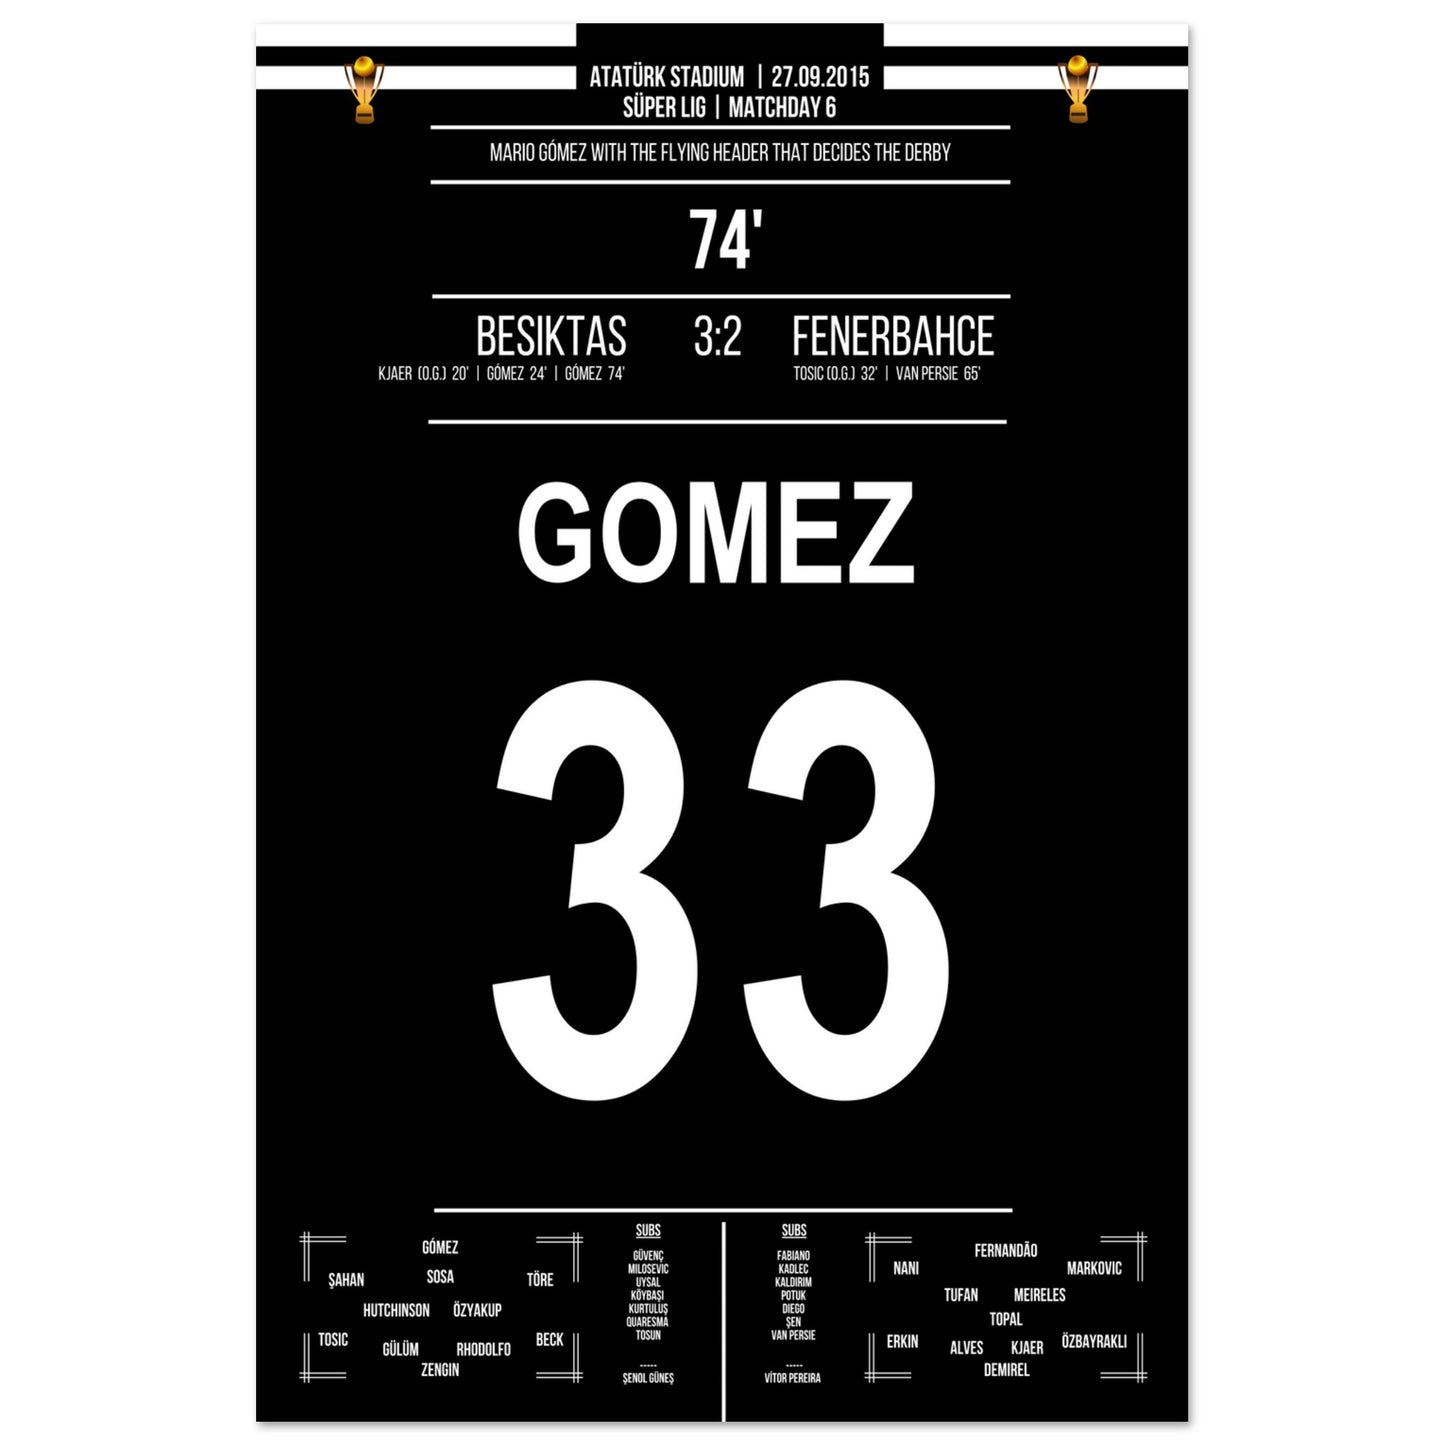 Mario Gomez Flugkopfball beim Derbysieg gegen Fenerbahce 2015